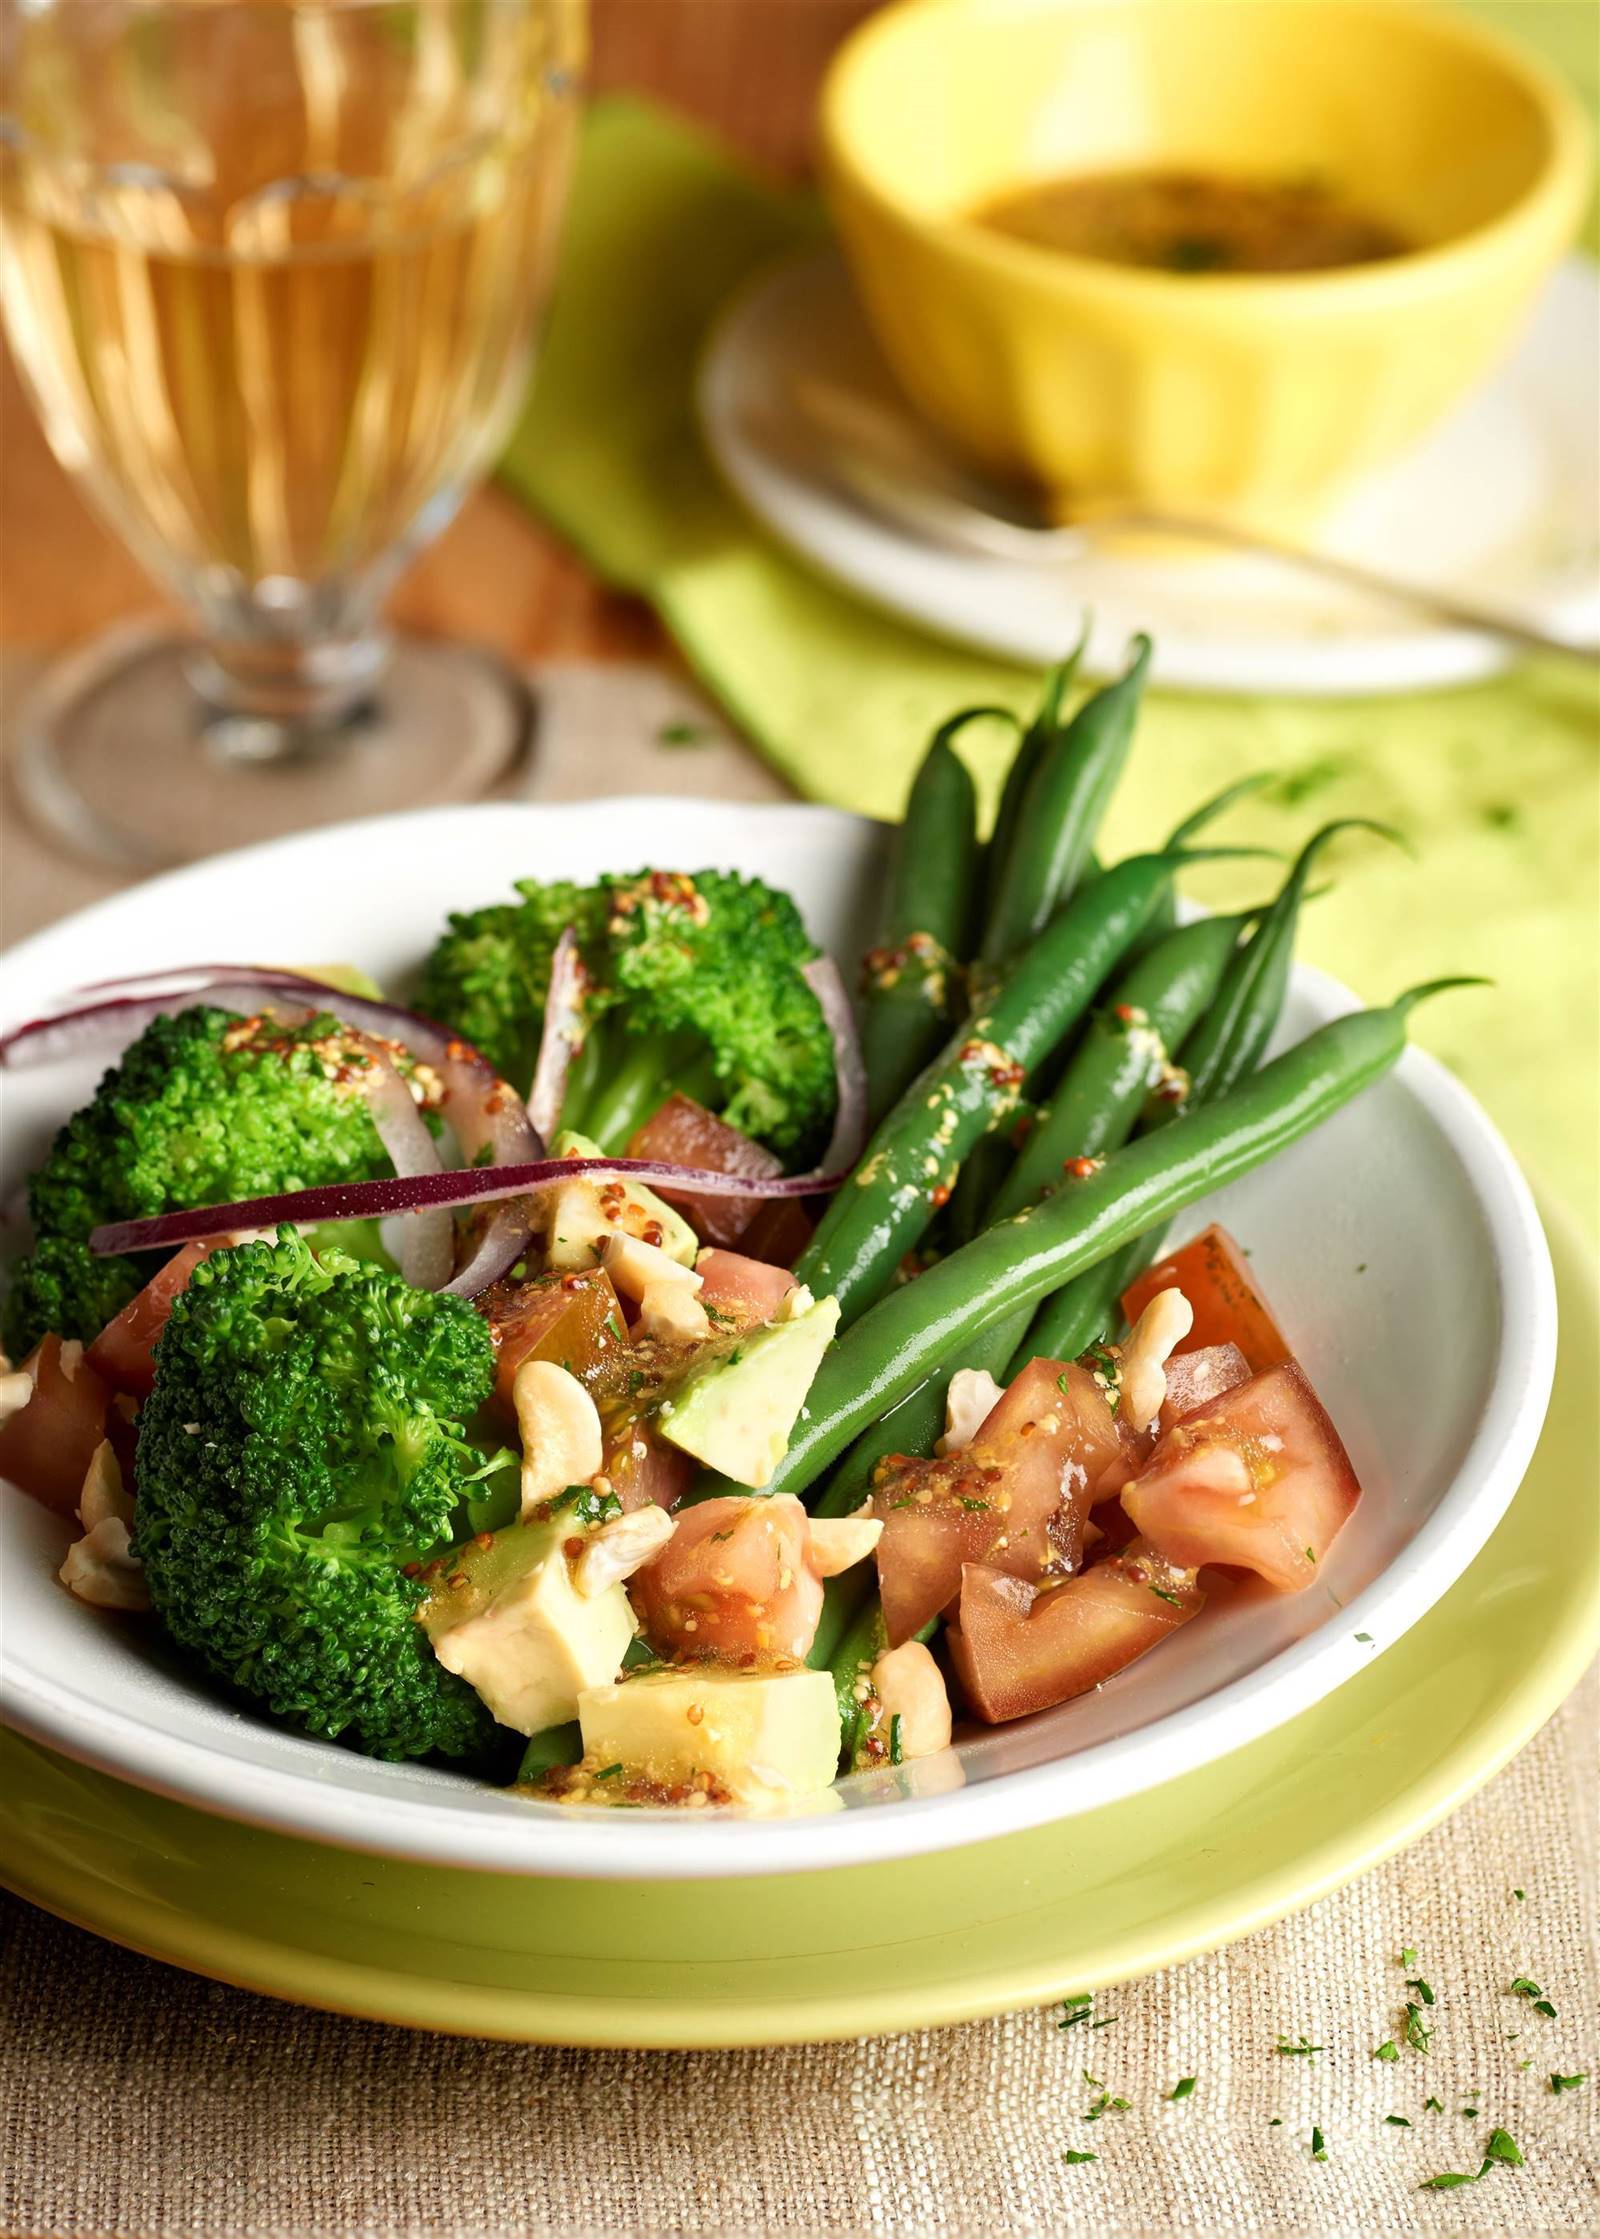 Cómo cocinar judías: ensalada de brócoli, judías verdes y aguacate. 